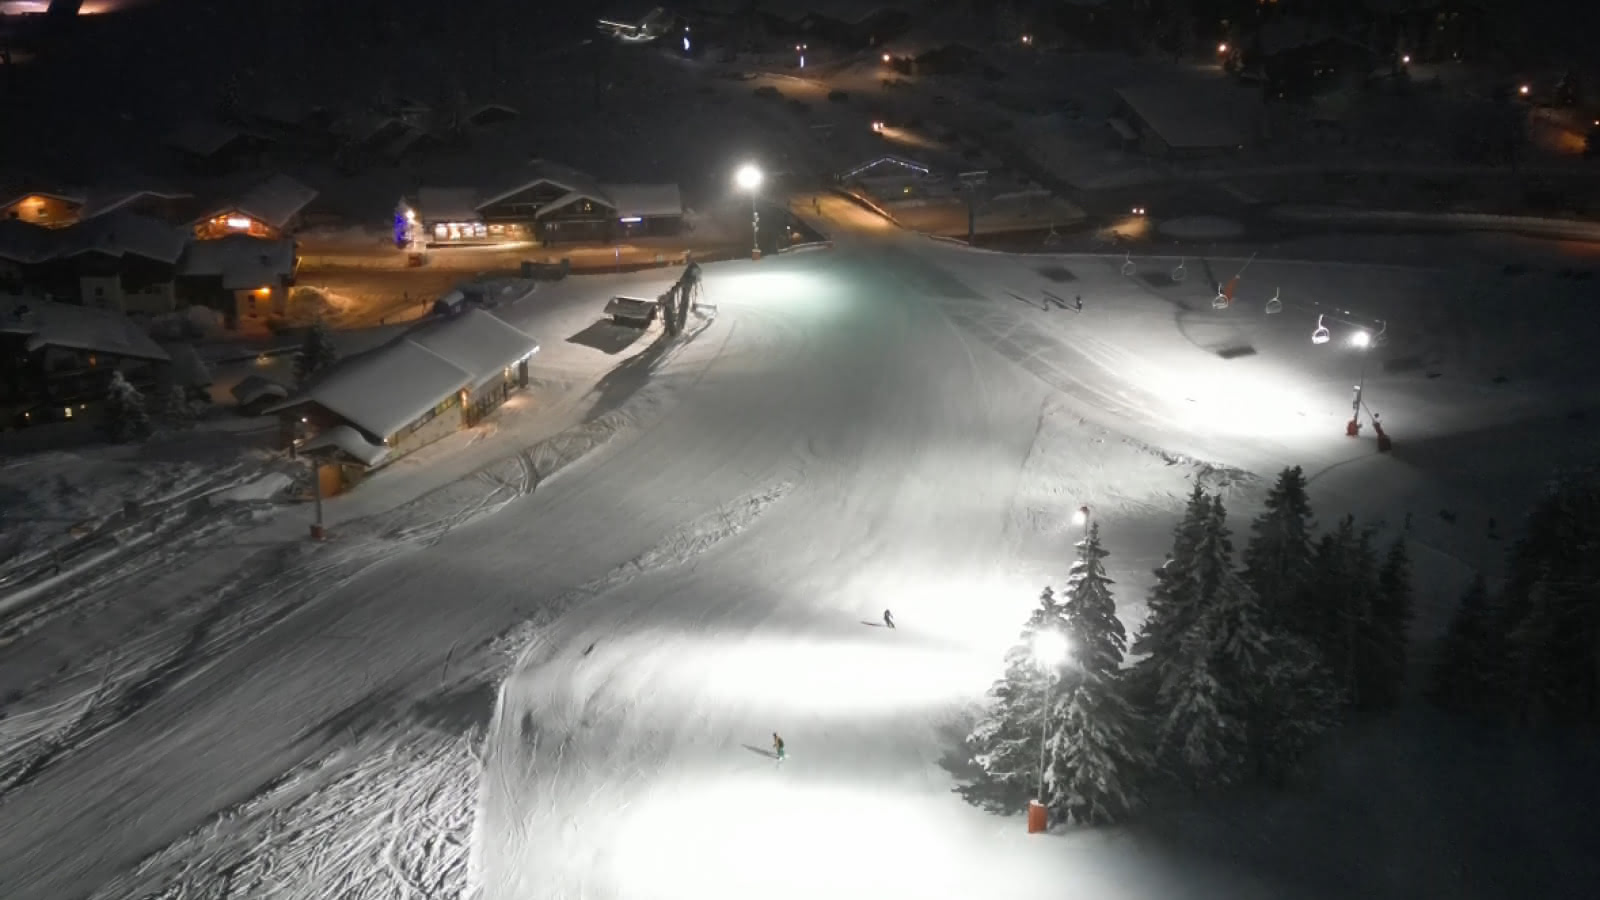 Piste de ski de nuit éclairée